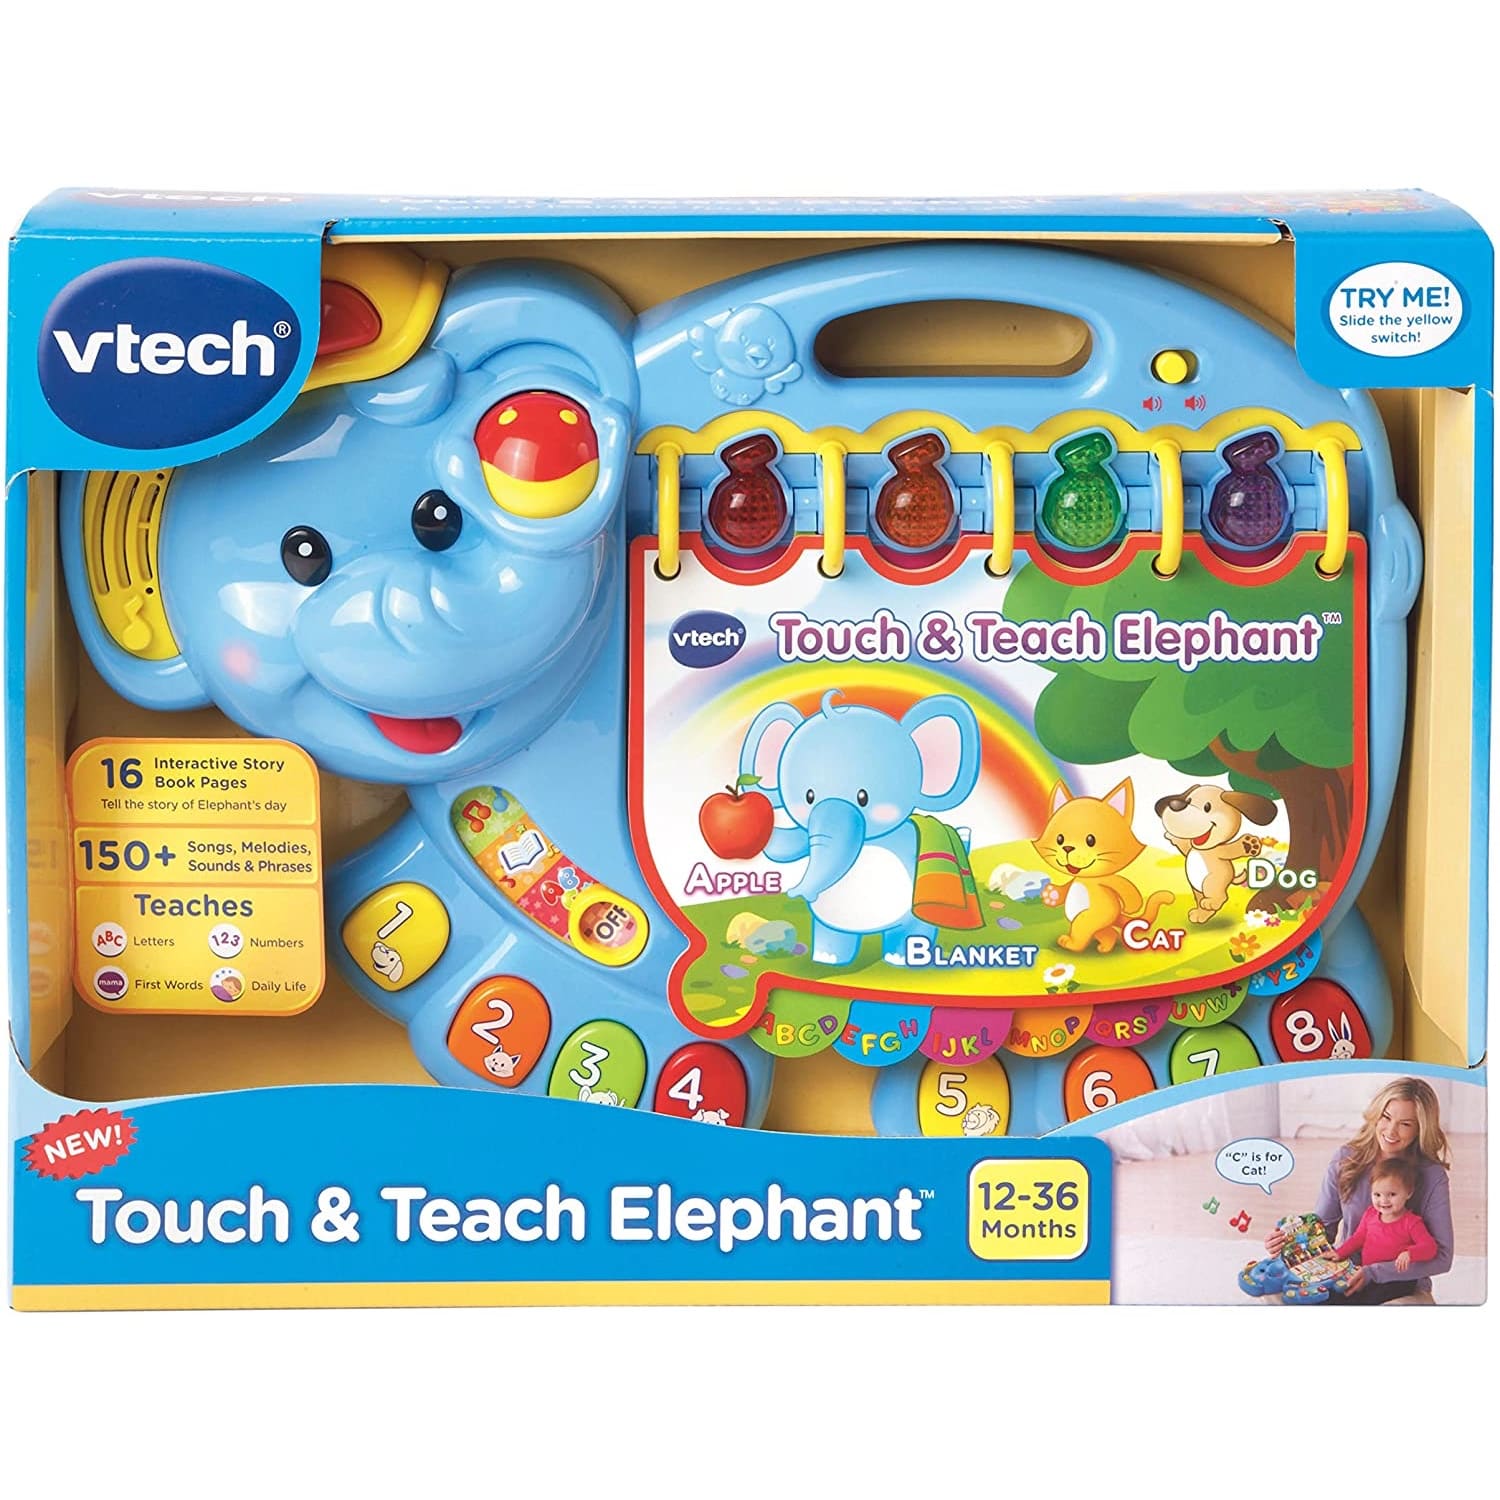  VTech Touch & Teach Elephant